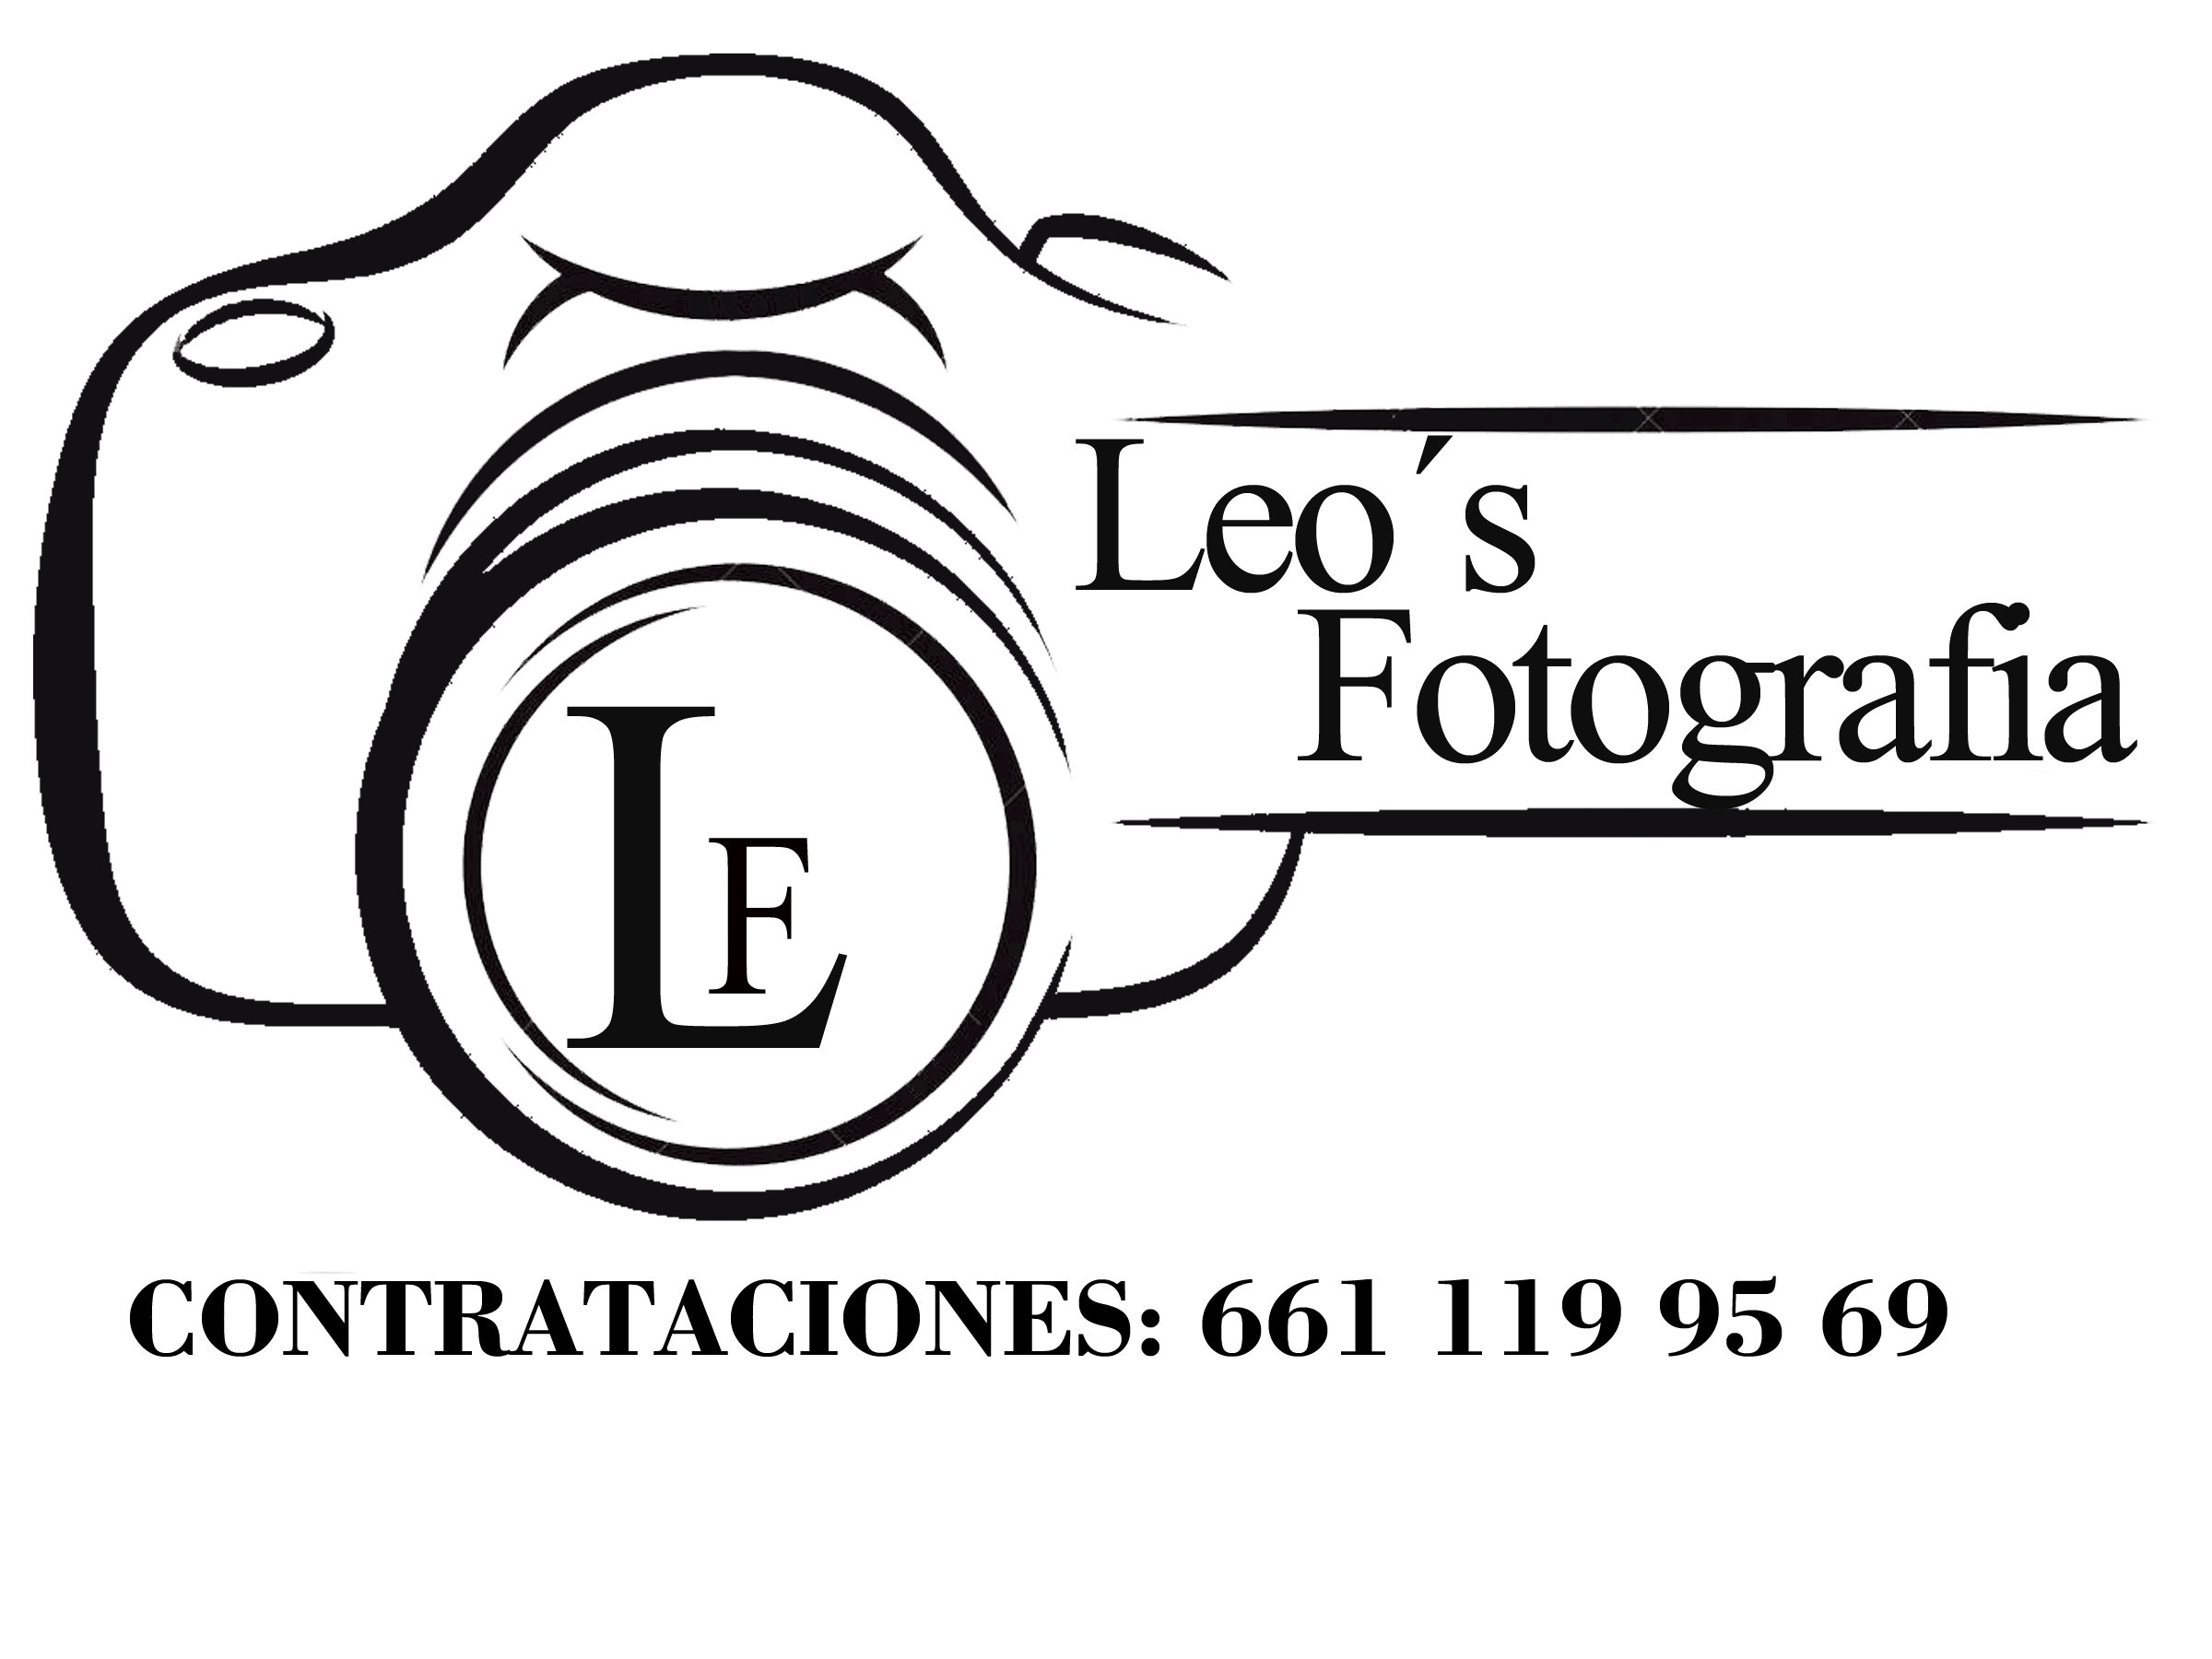 Leos Fotografía Digital